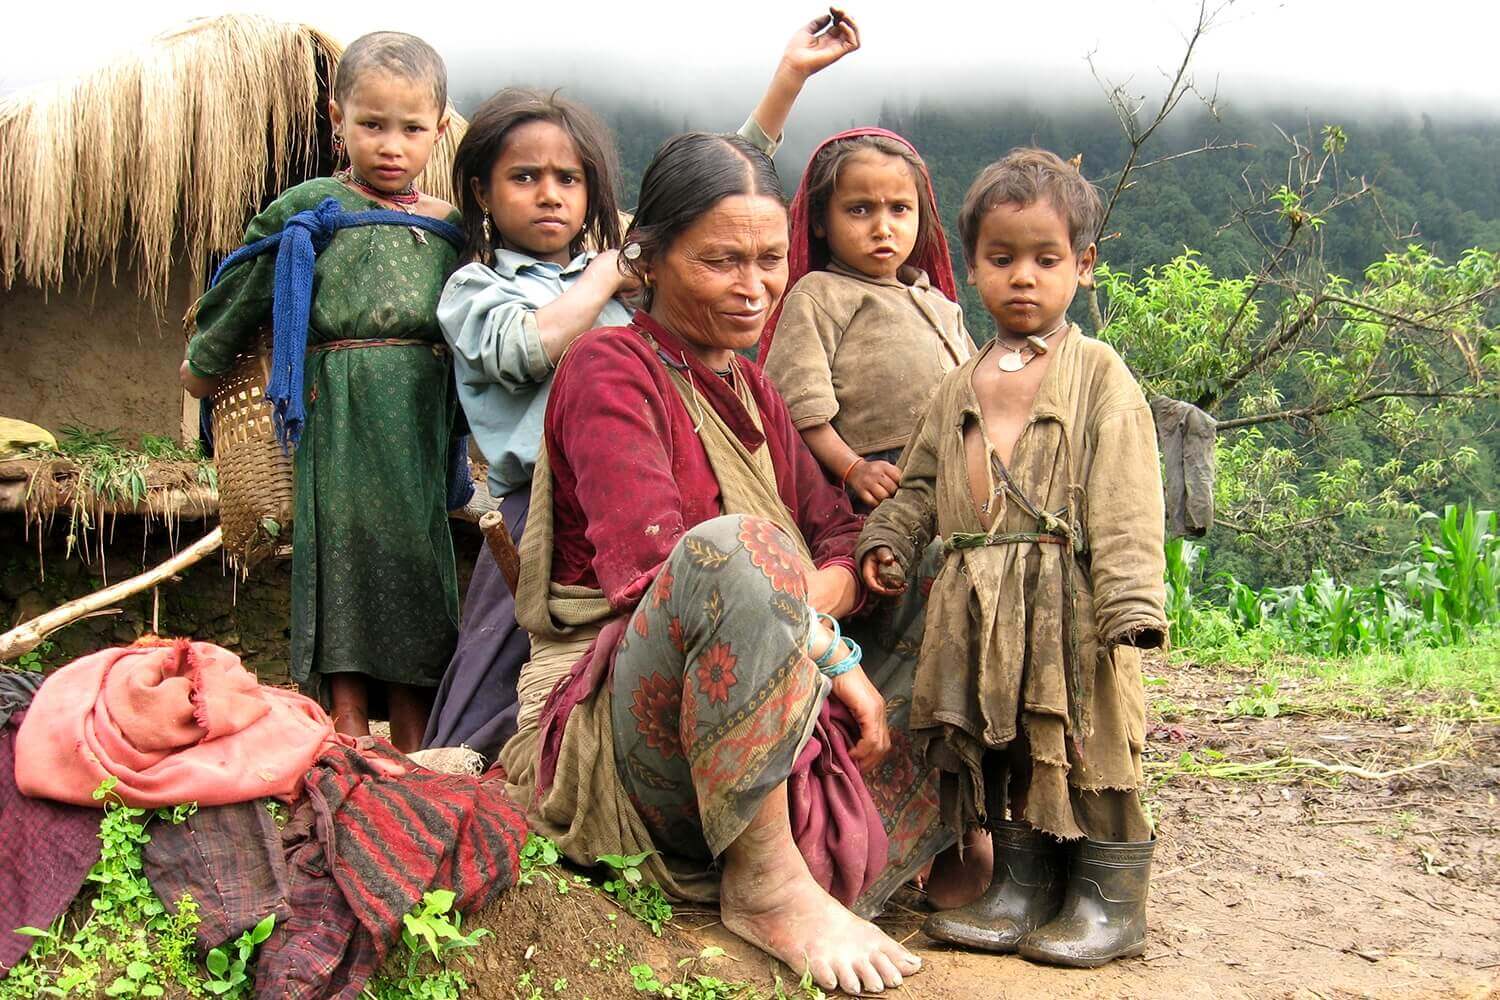 Nepali puti bhanta kochardai